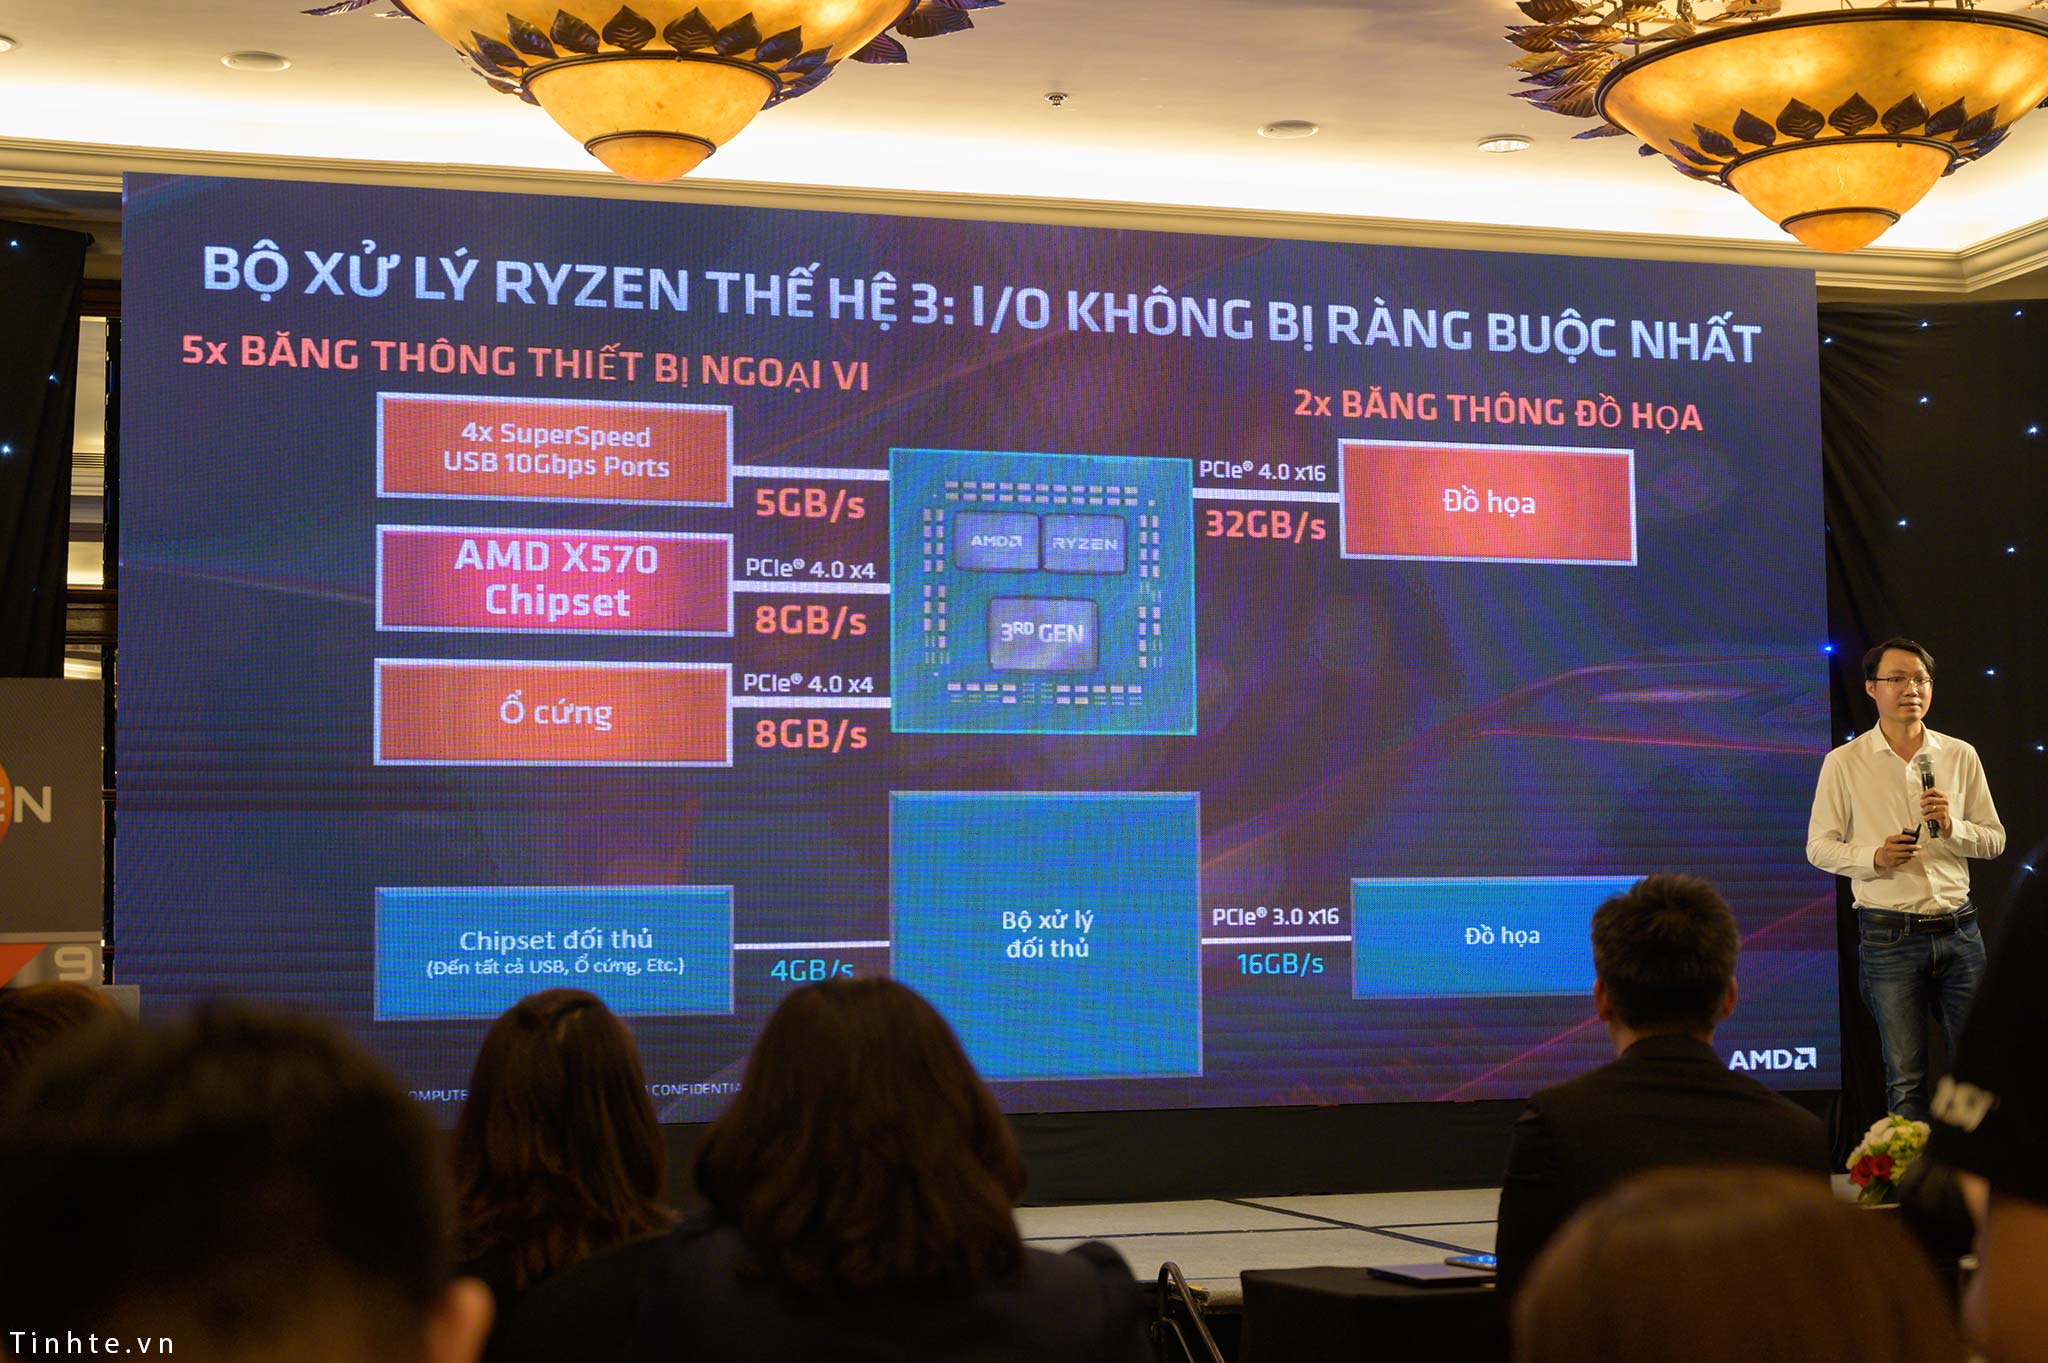 AMD_Ryzen_3_Radeon_RX_5700_Vietnam_tinhte_2.jpg